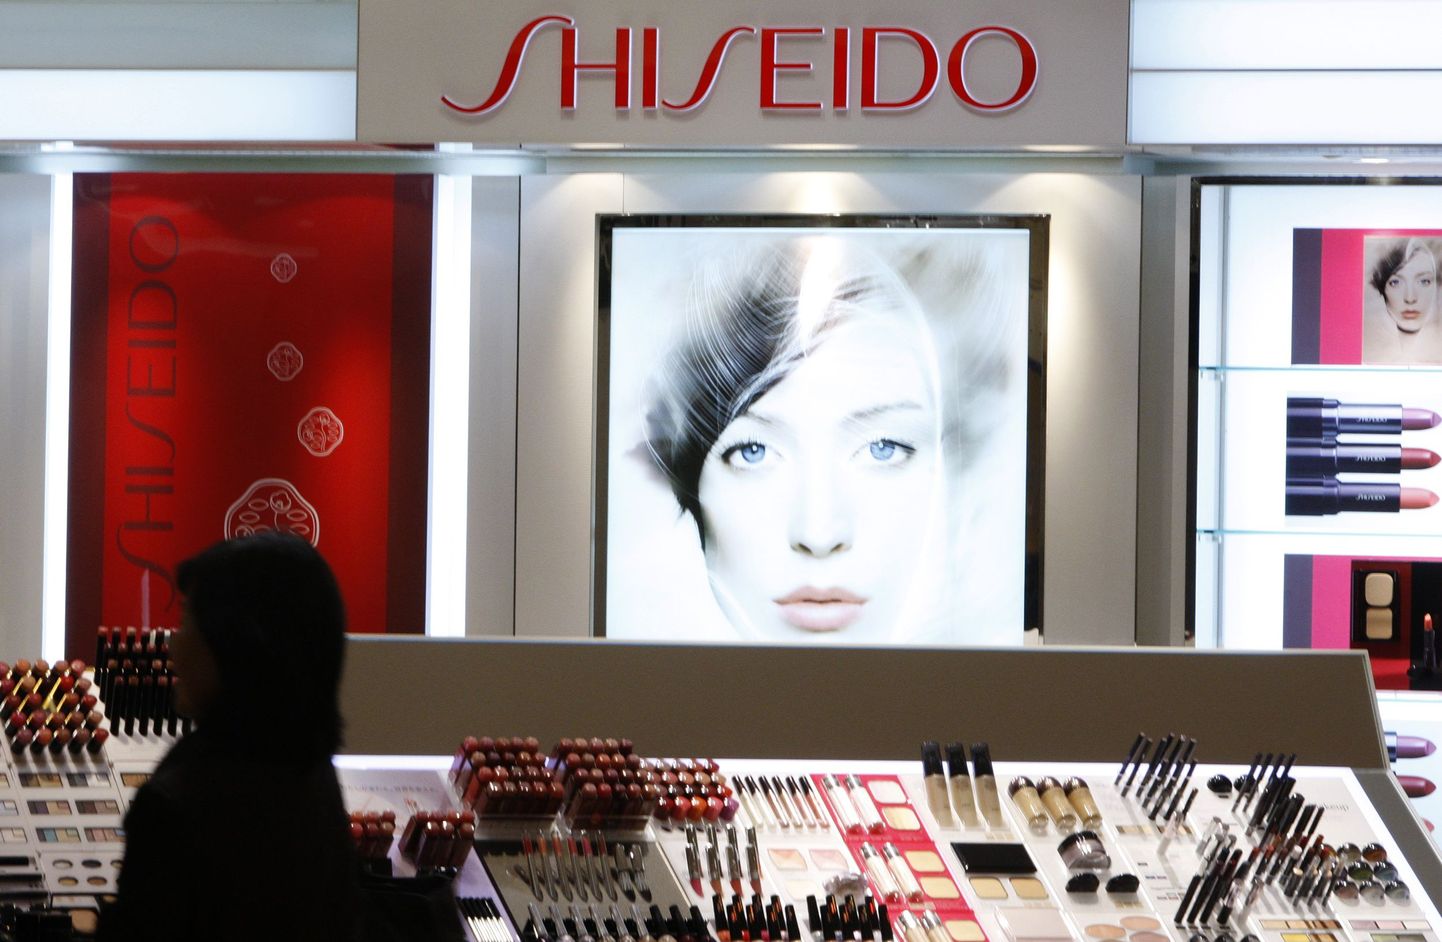 Shiseido lett Tokyos